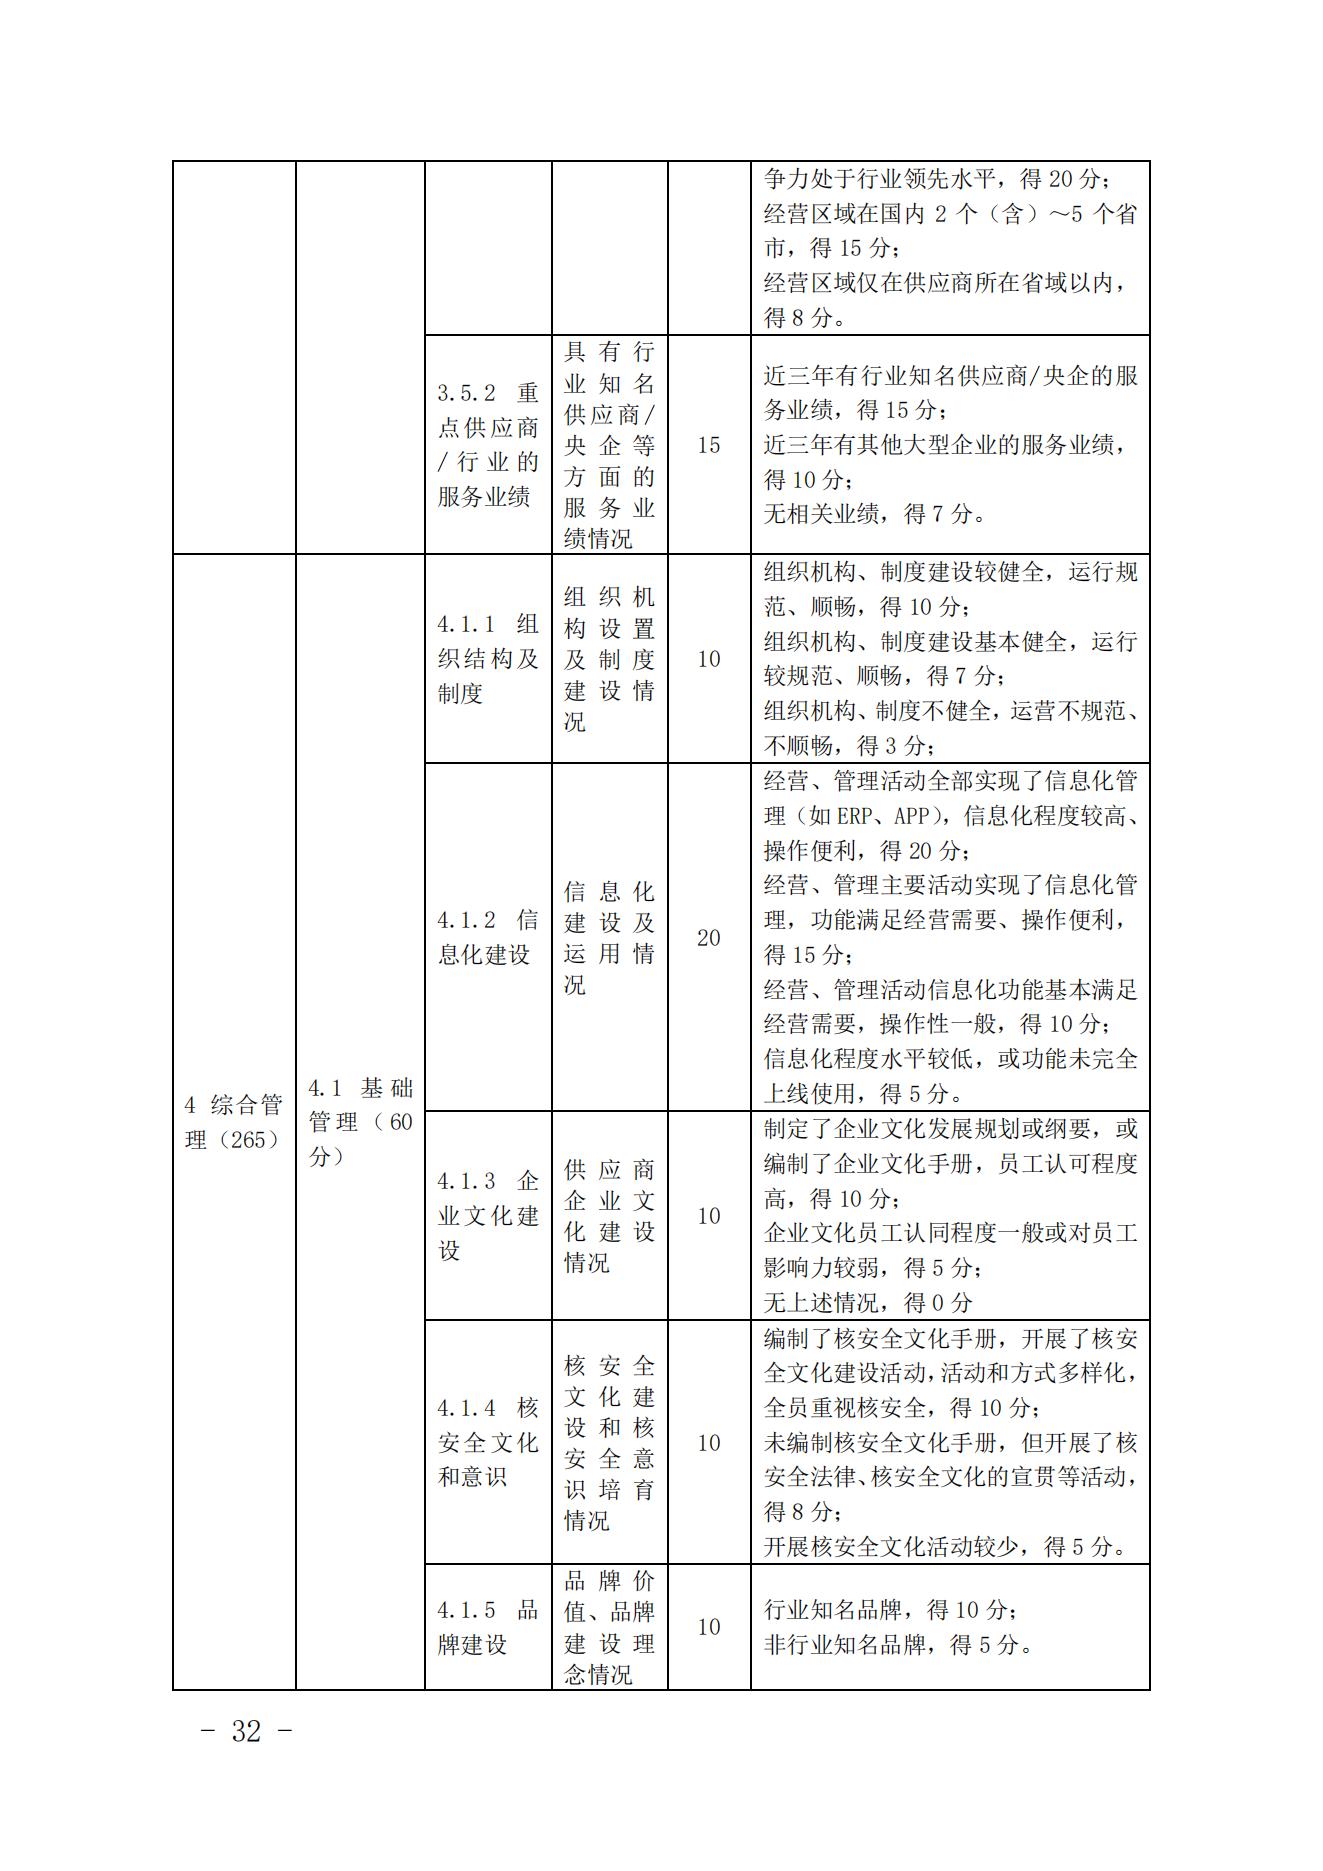 关于印发《中国核能行业协会核能行业供应商信用评价管理办法》《中国核能行业协会核能行业供应商信用评价规范》的通知_31.jpg